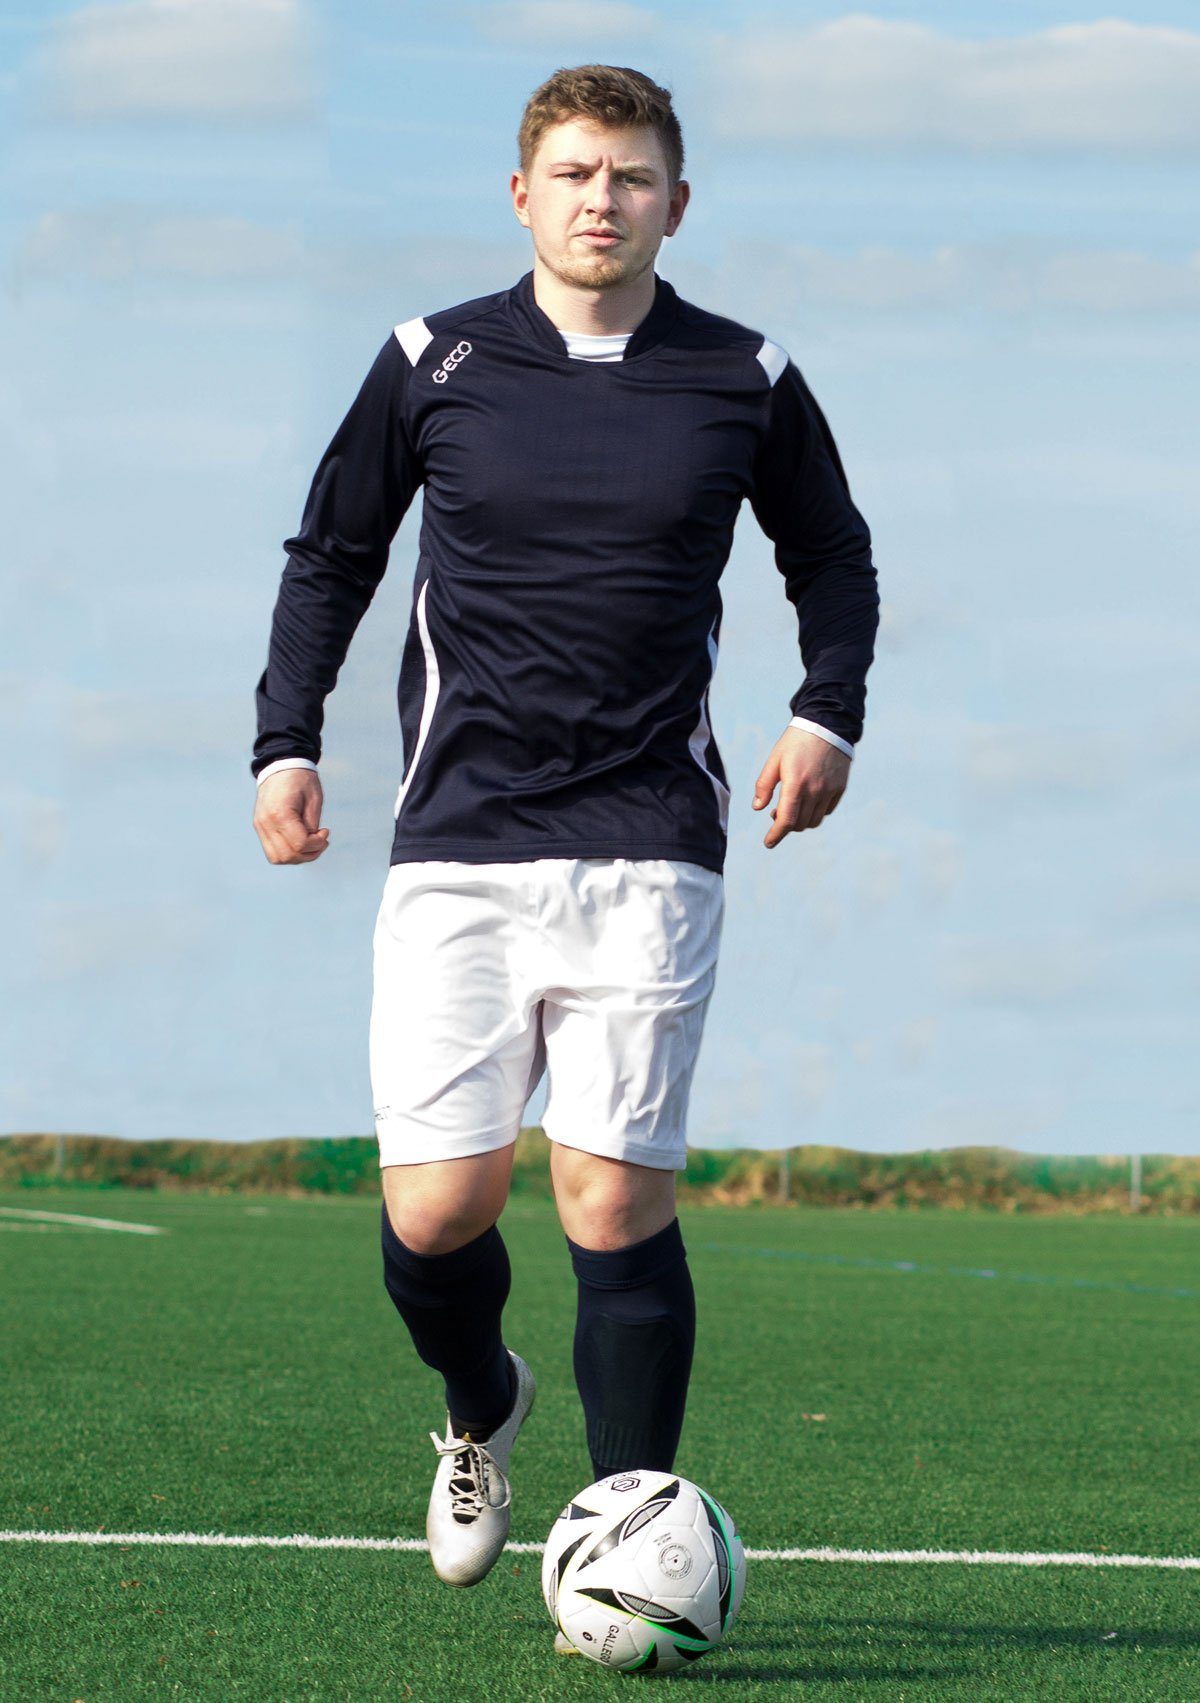 Geco Sportswear Fußball weiß Stutzenstrümpfe perfekter strapazierfähig CALIMA Passform mit Stutzenstrümpfe Strumpfstutzen